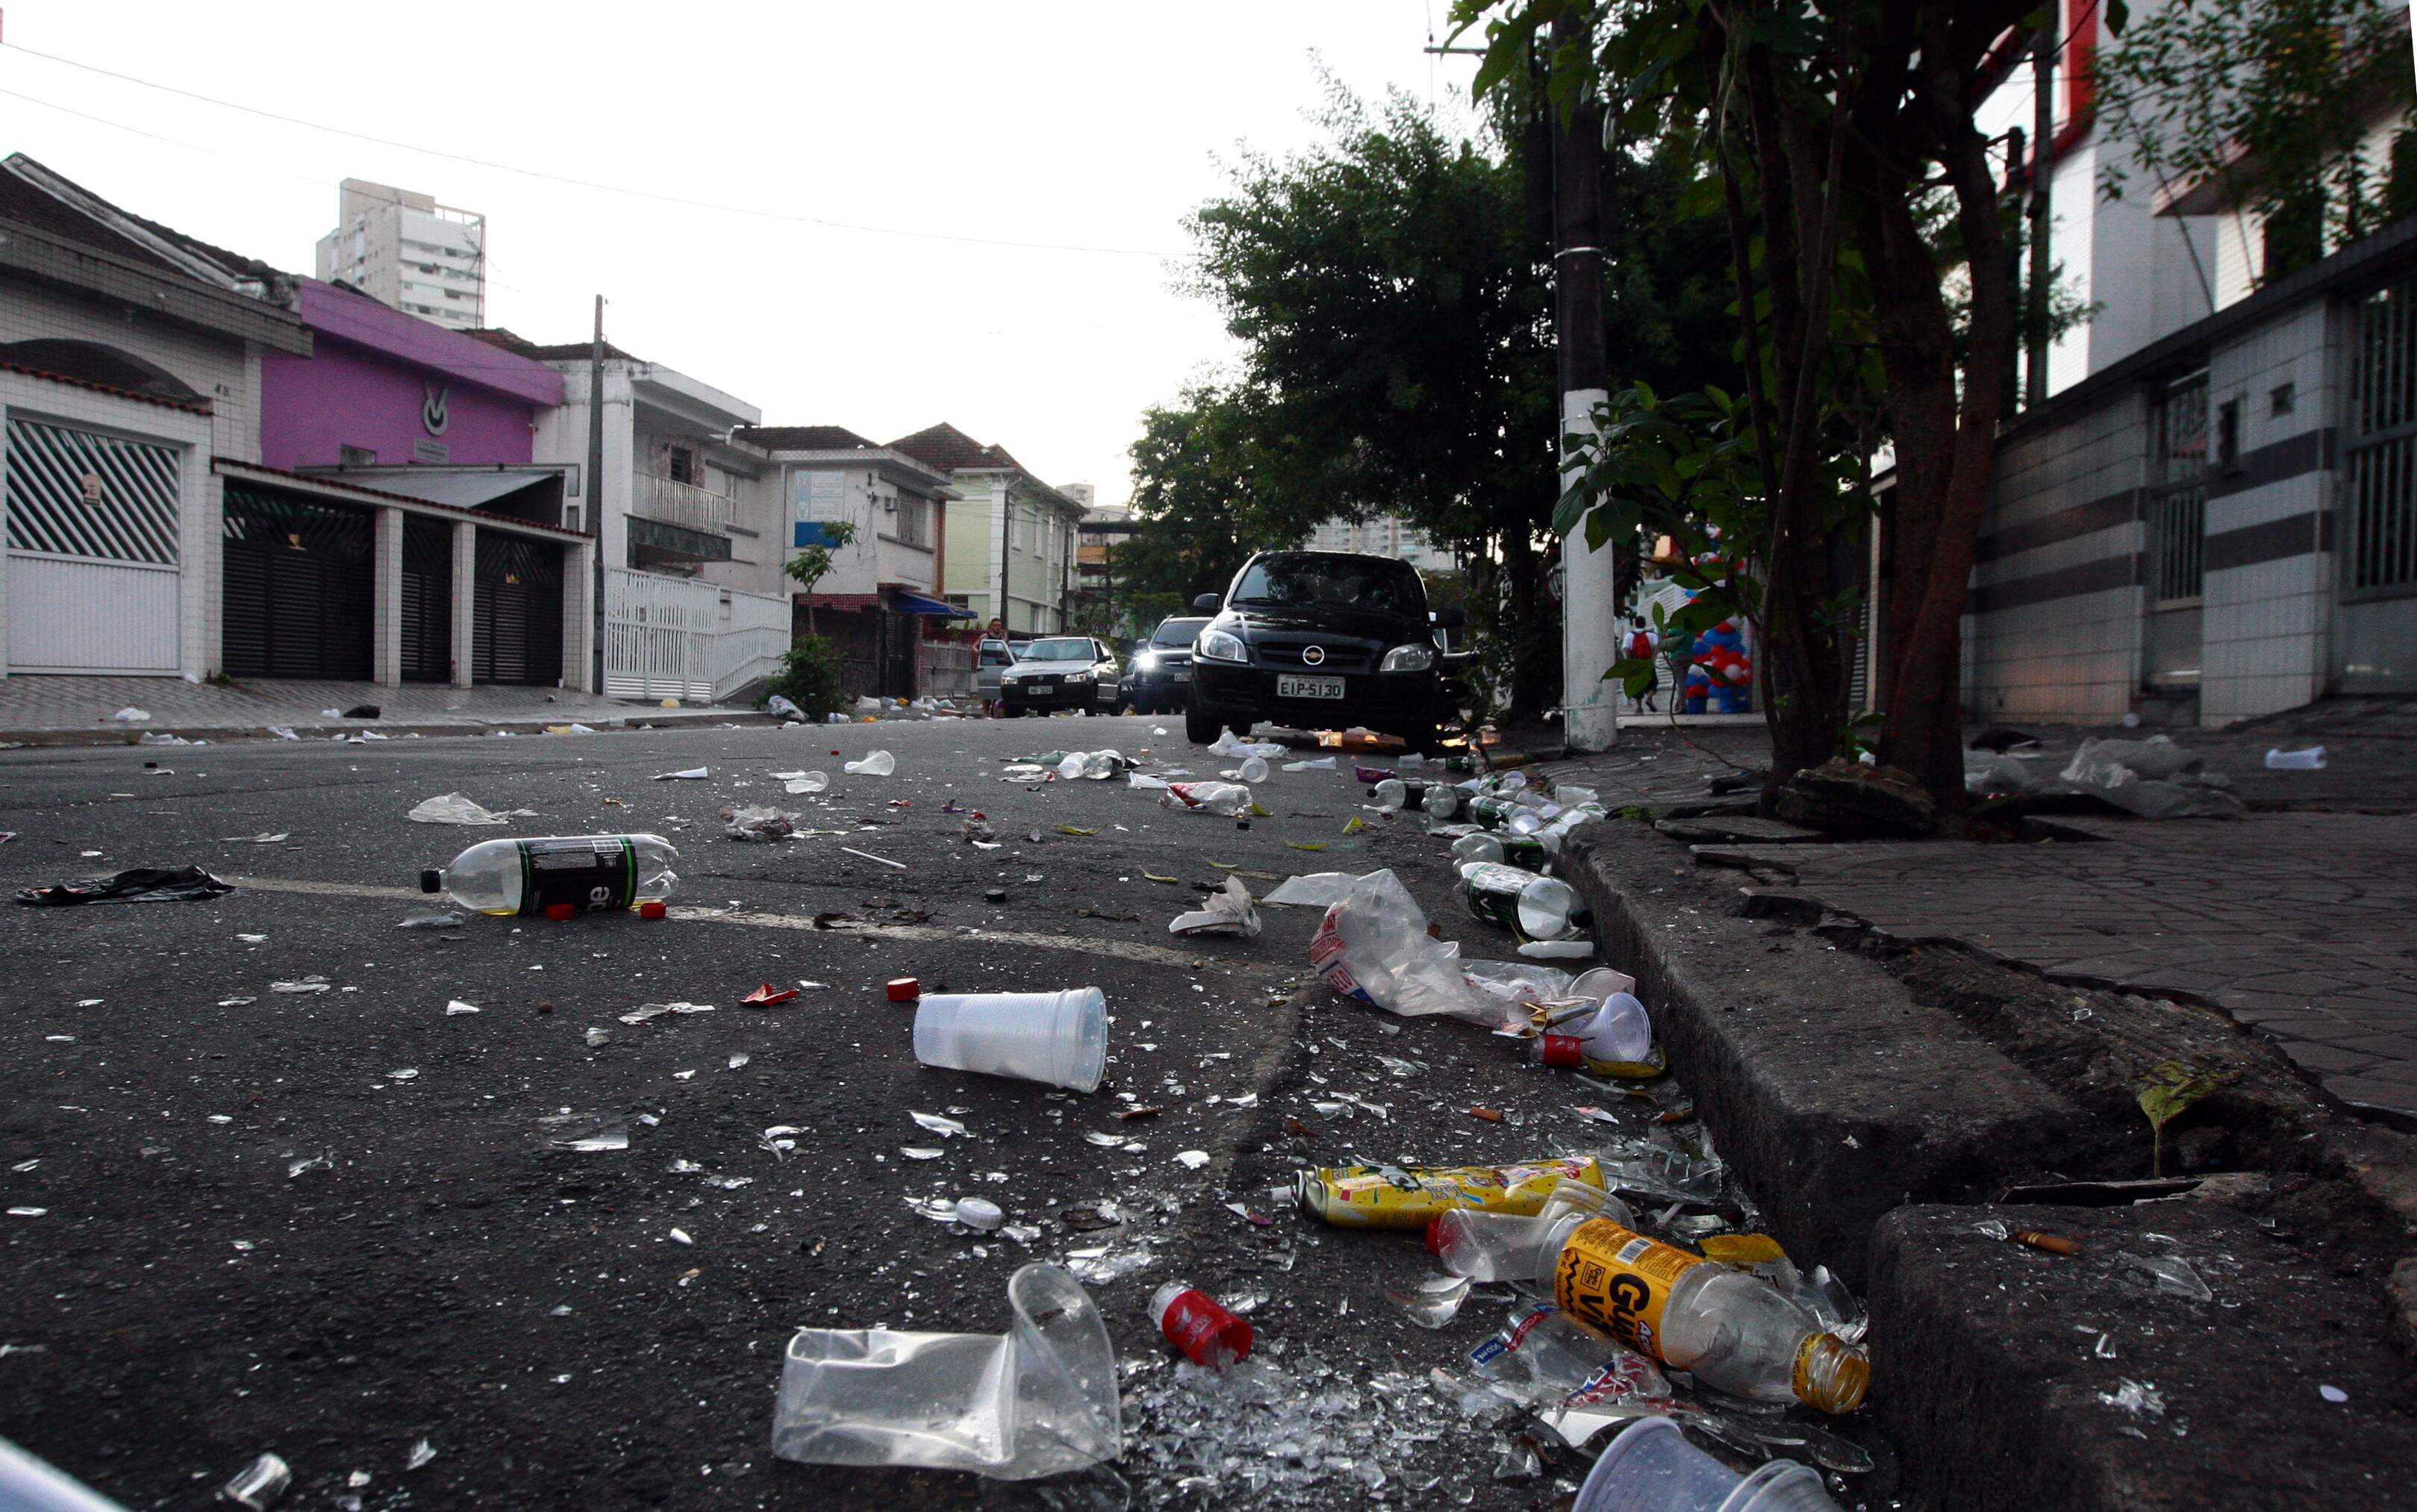 Desfile da Banda da Vila Belmiro assustou foliões e a vizinhança, com assaltos e sujeira nas ruas